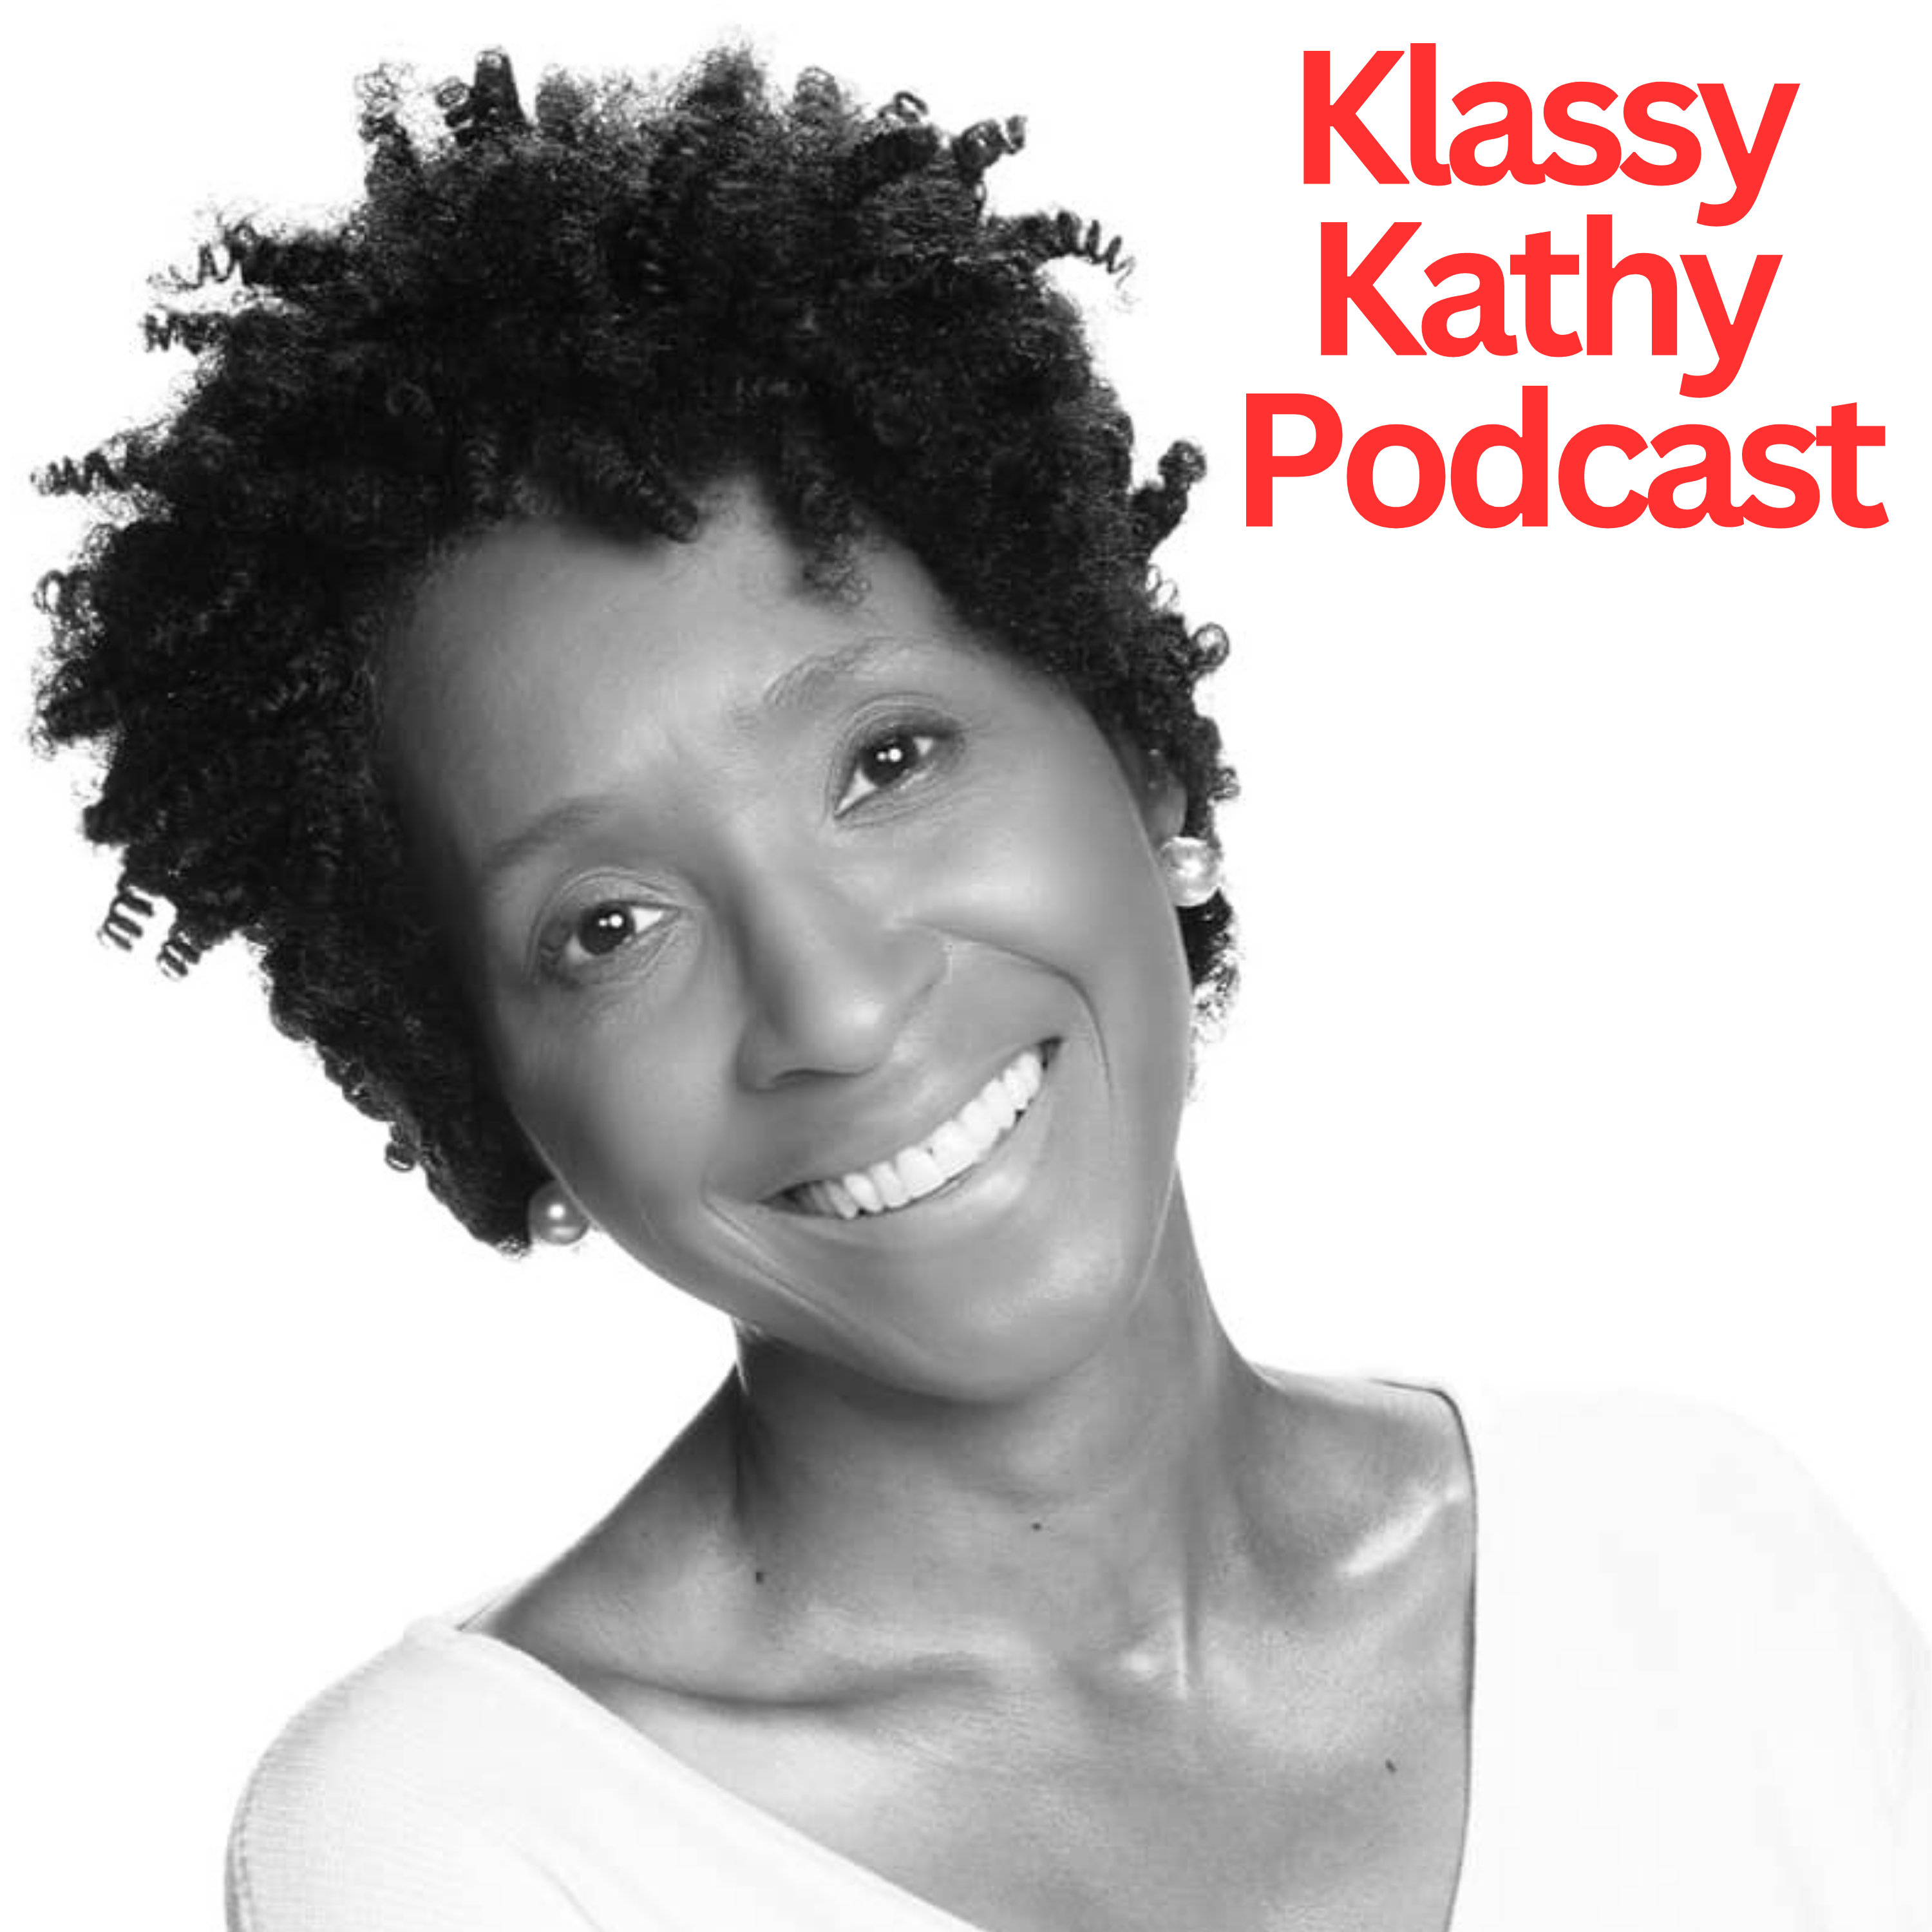 Klassy Kathy Podcast